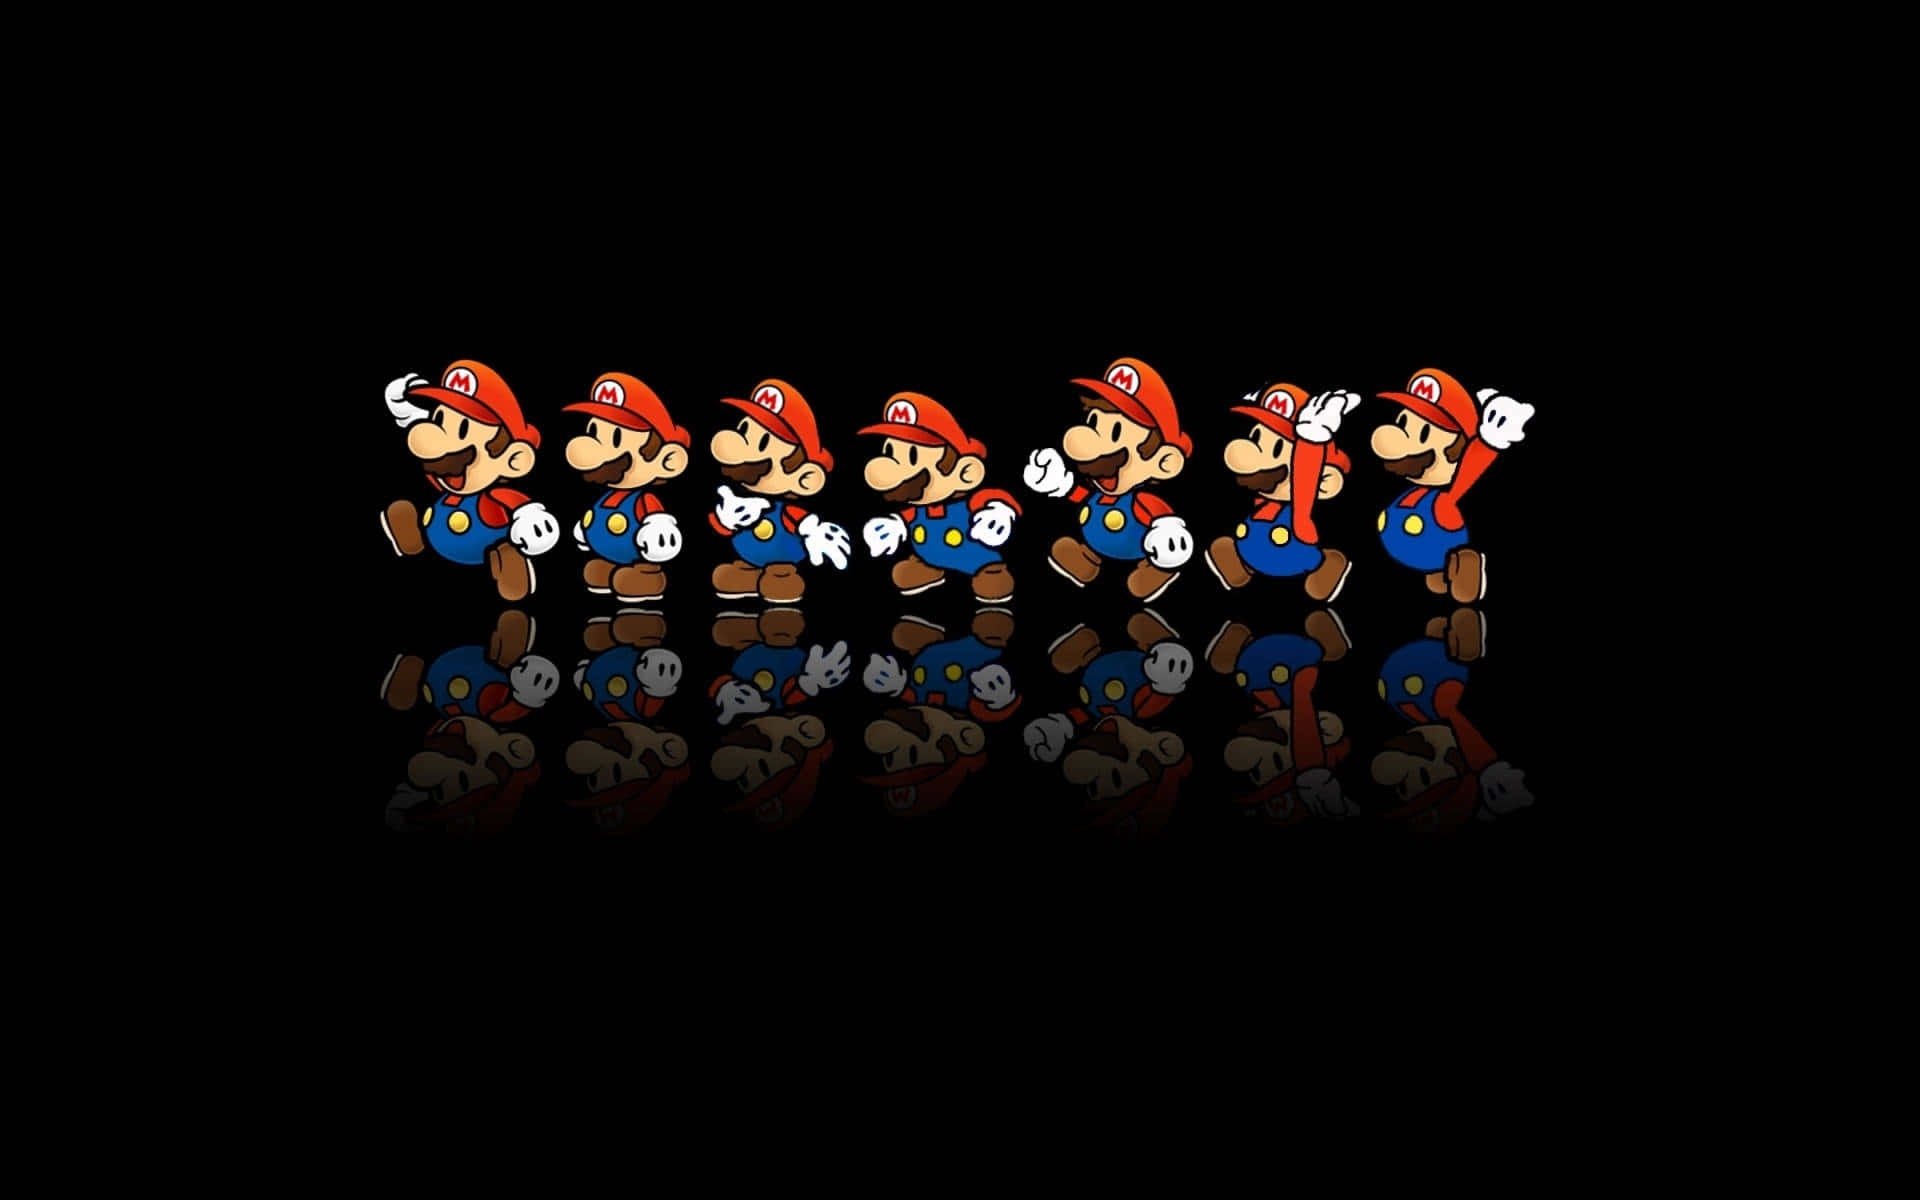 En gruppe af Nintendo Mario-karakterer står i en række. Wallpaper